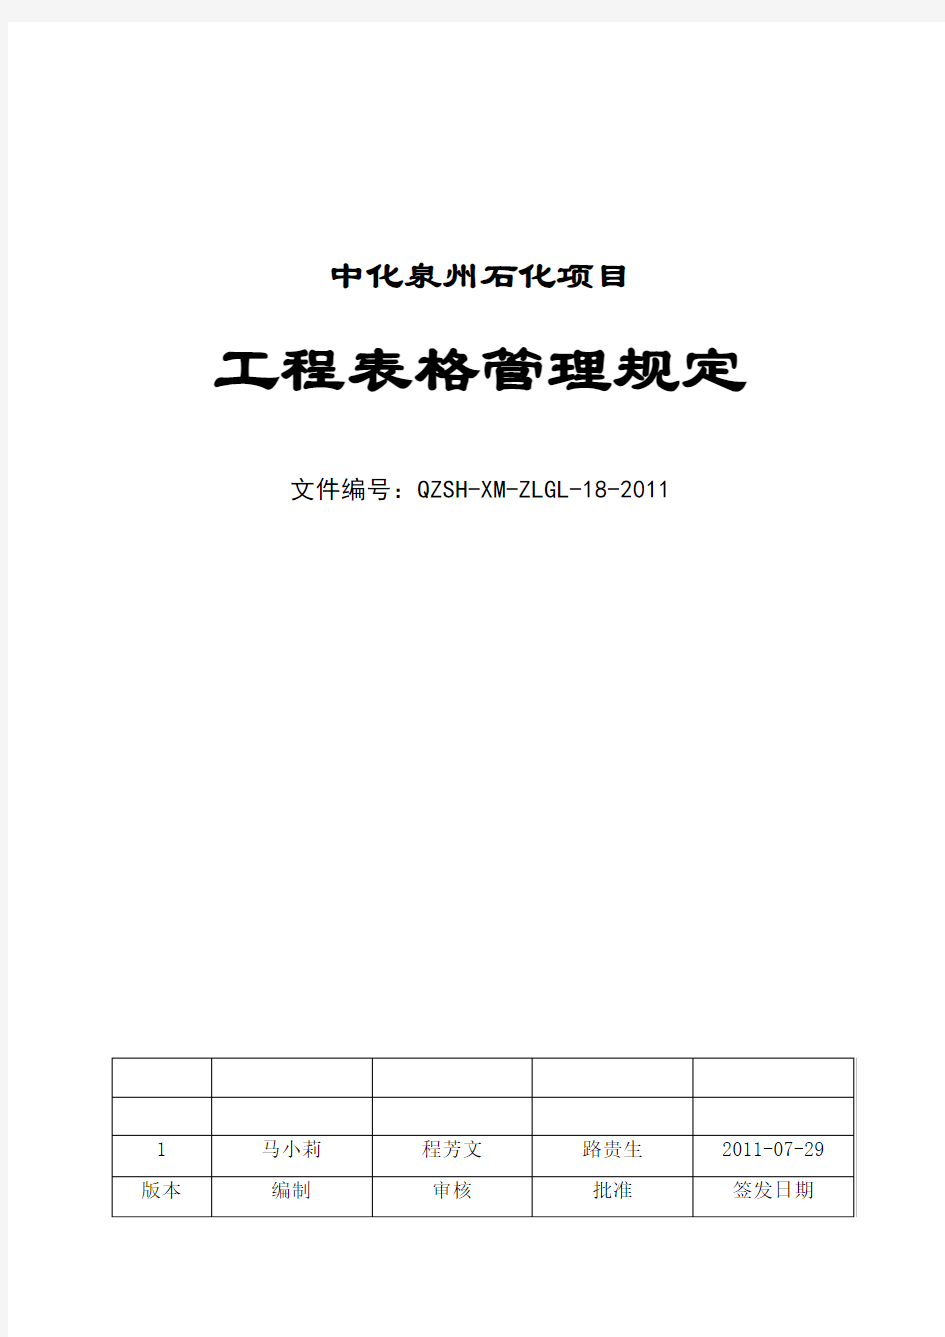 中化泉州石化公司项目管理手册工程表格管理规定